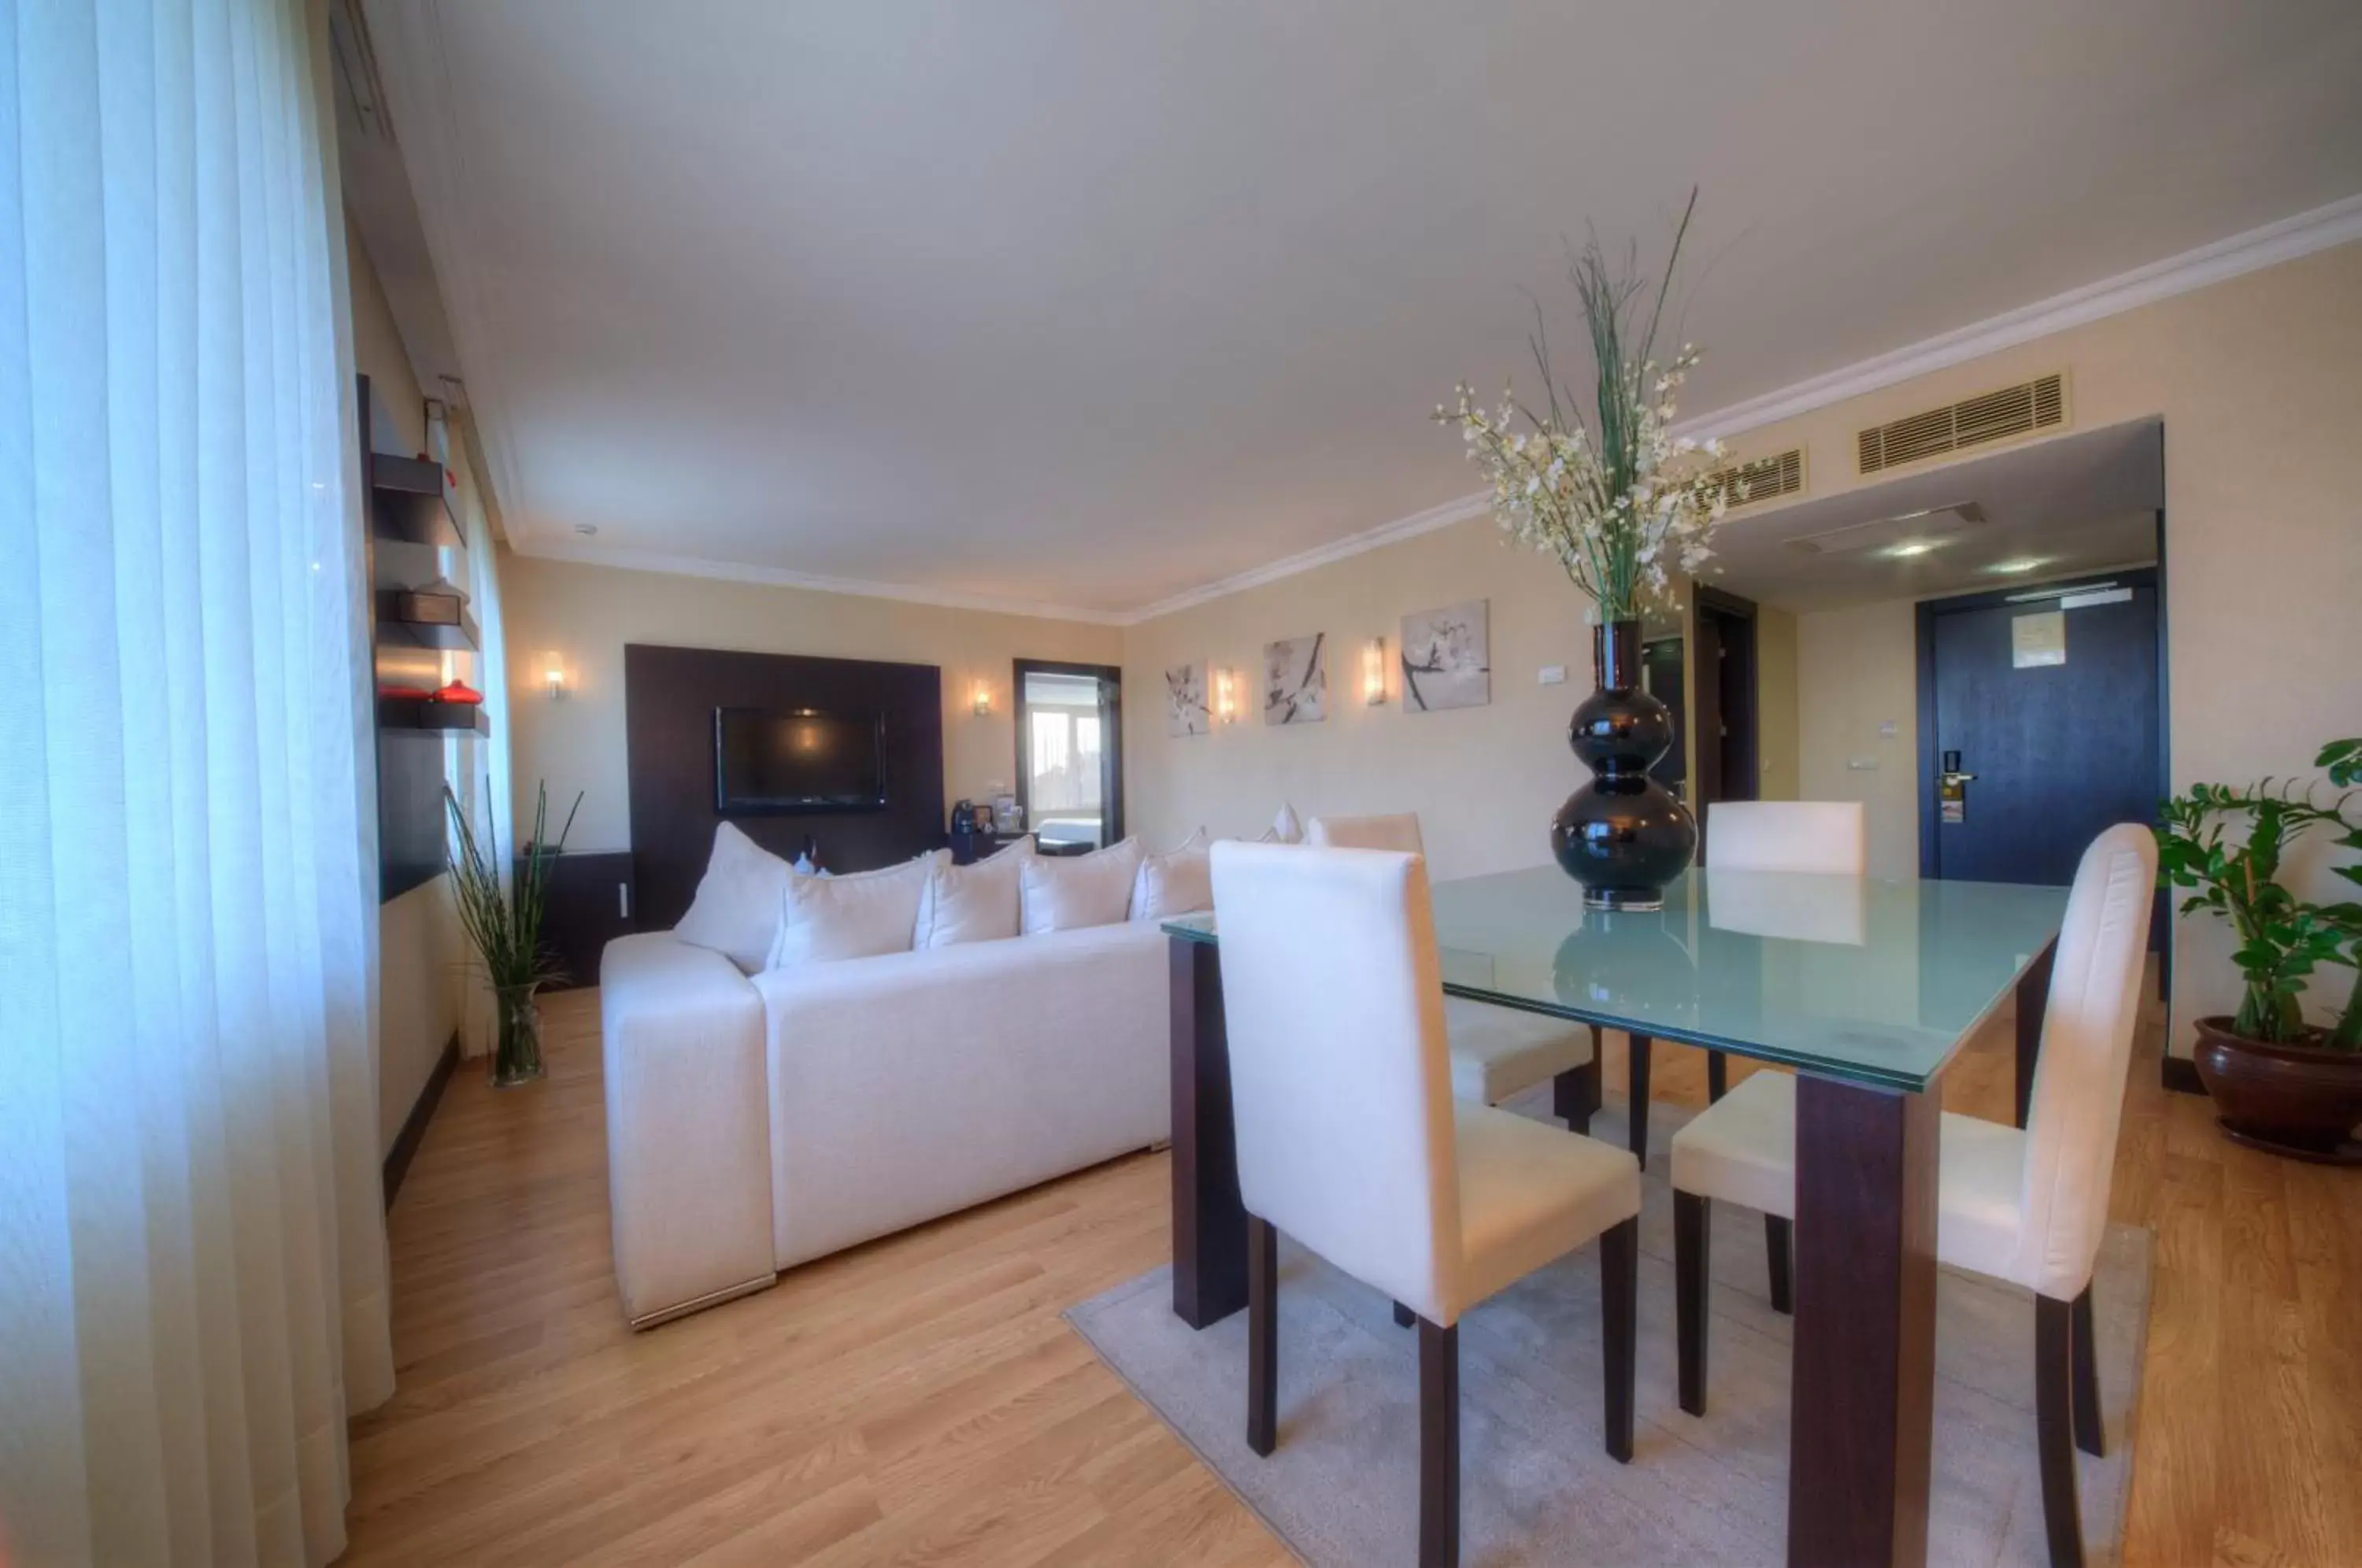 Living room, Dining Area in Eresin Hotels Topkapi